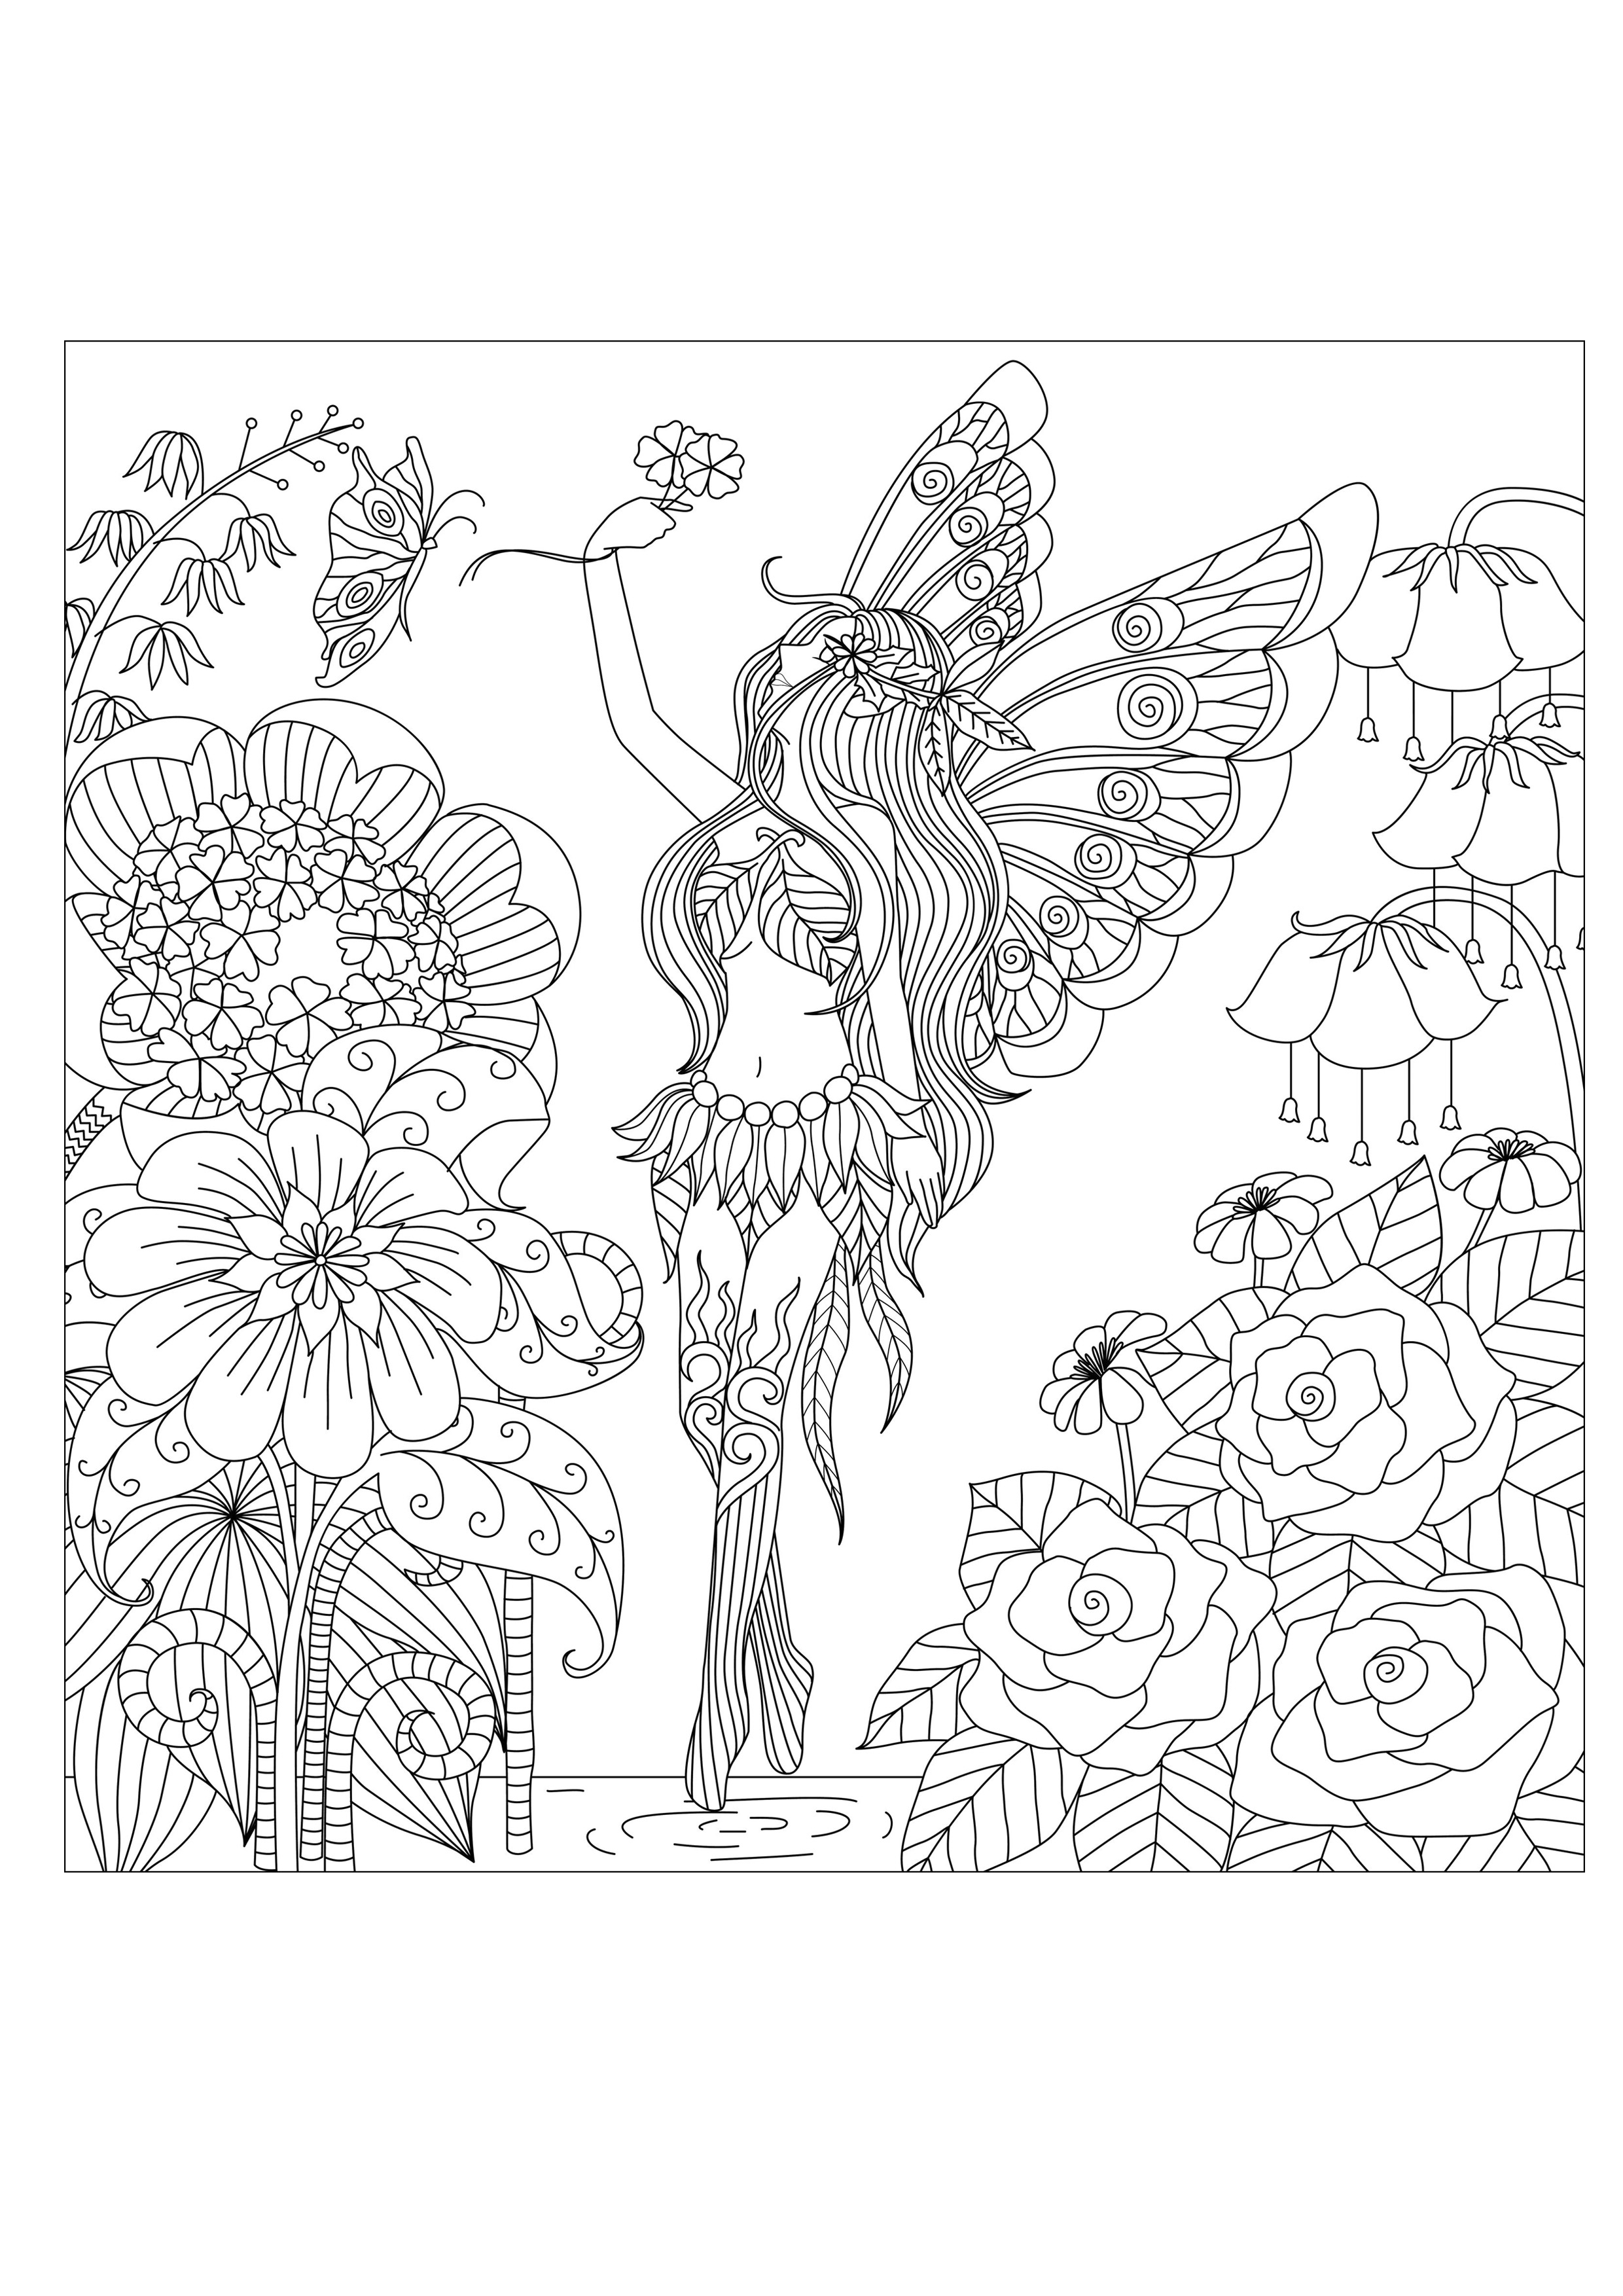 Disegni da colorare per adulti : Fiori e vegetazione - 76, Artista : Bimdeedee   Fonte : 123rf